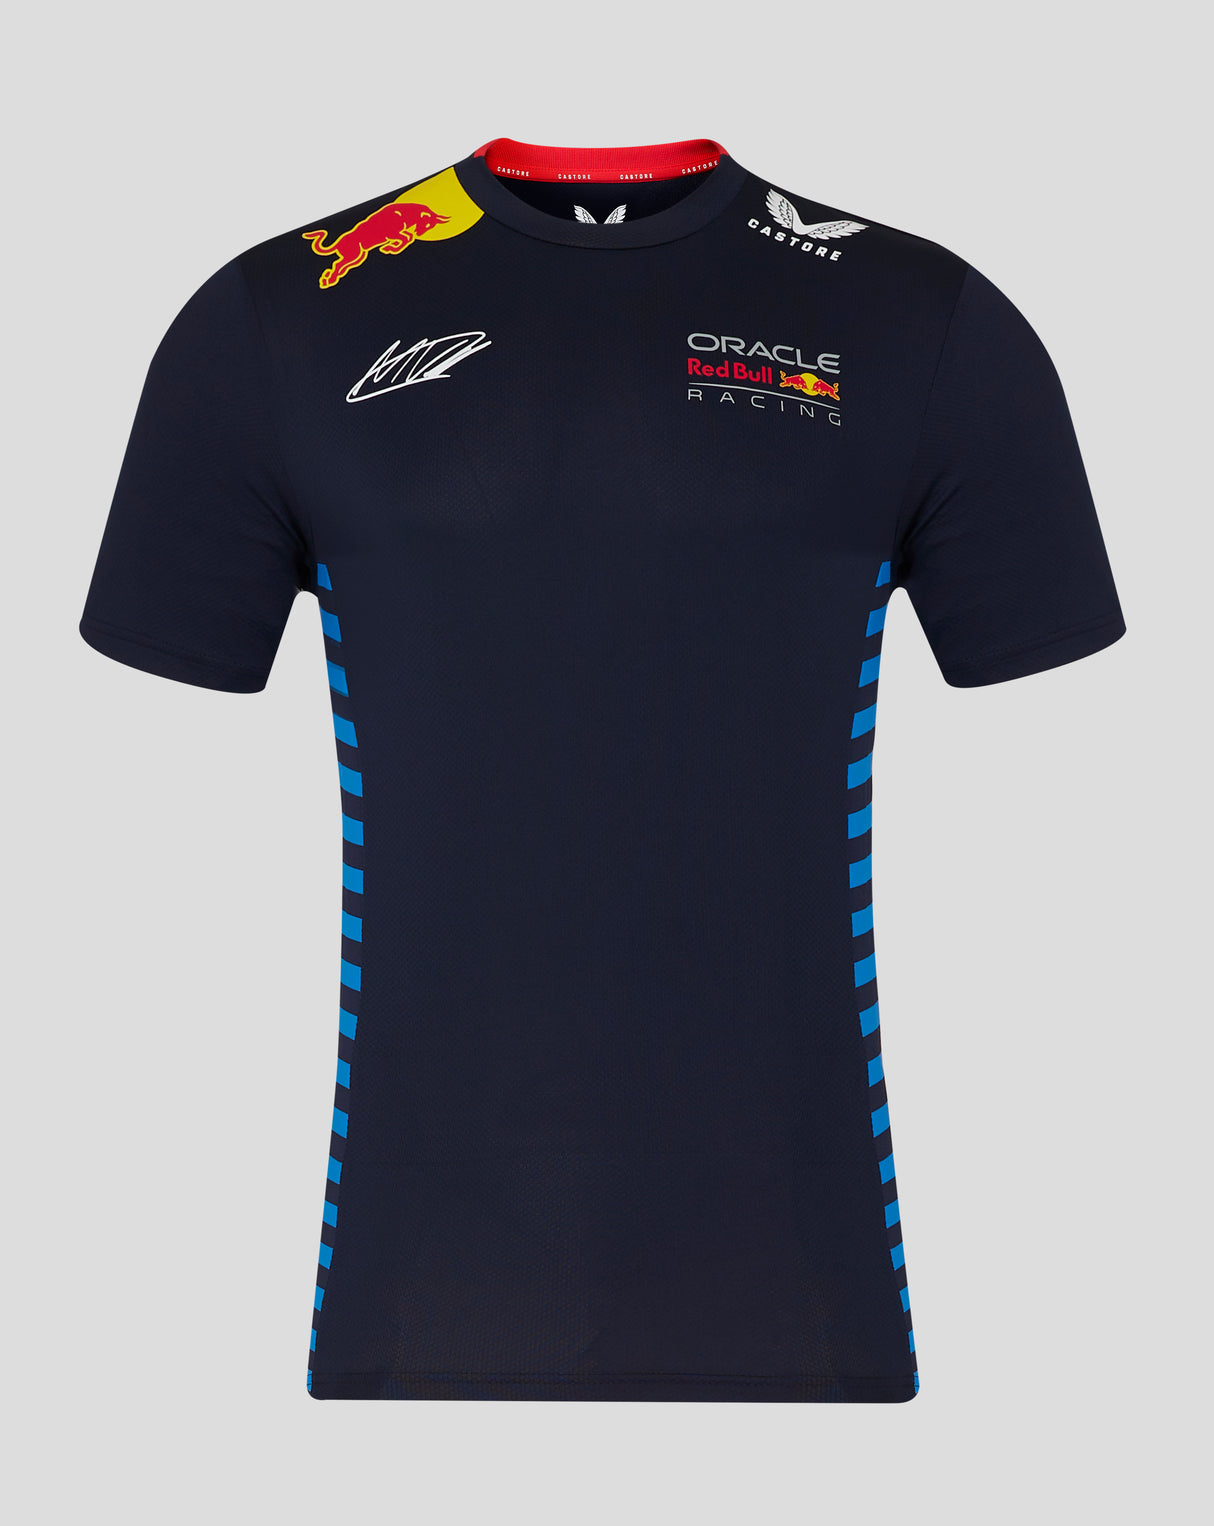 Red Bull t-shirt, Castore, Max Verstappen, bleu - FansBRANDS®